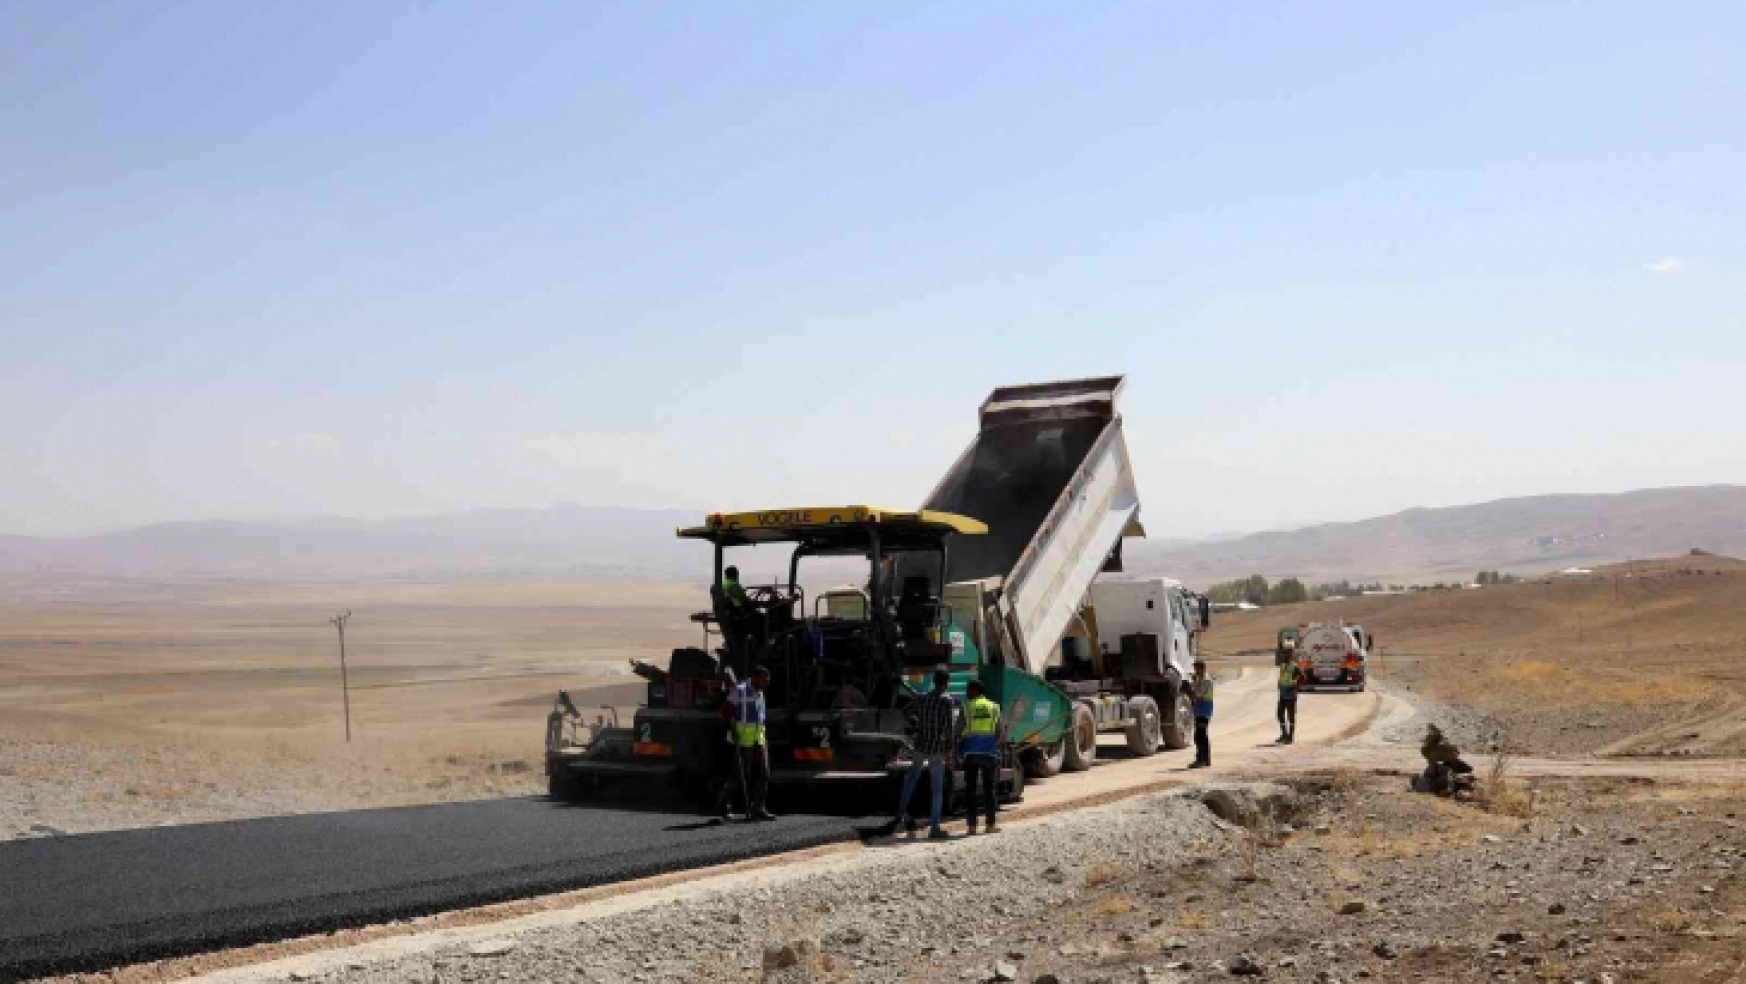 Van Büyükşehir Belediyesi Özalp'ta 14 kilometre asfalt çalışması yapıyor